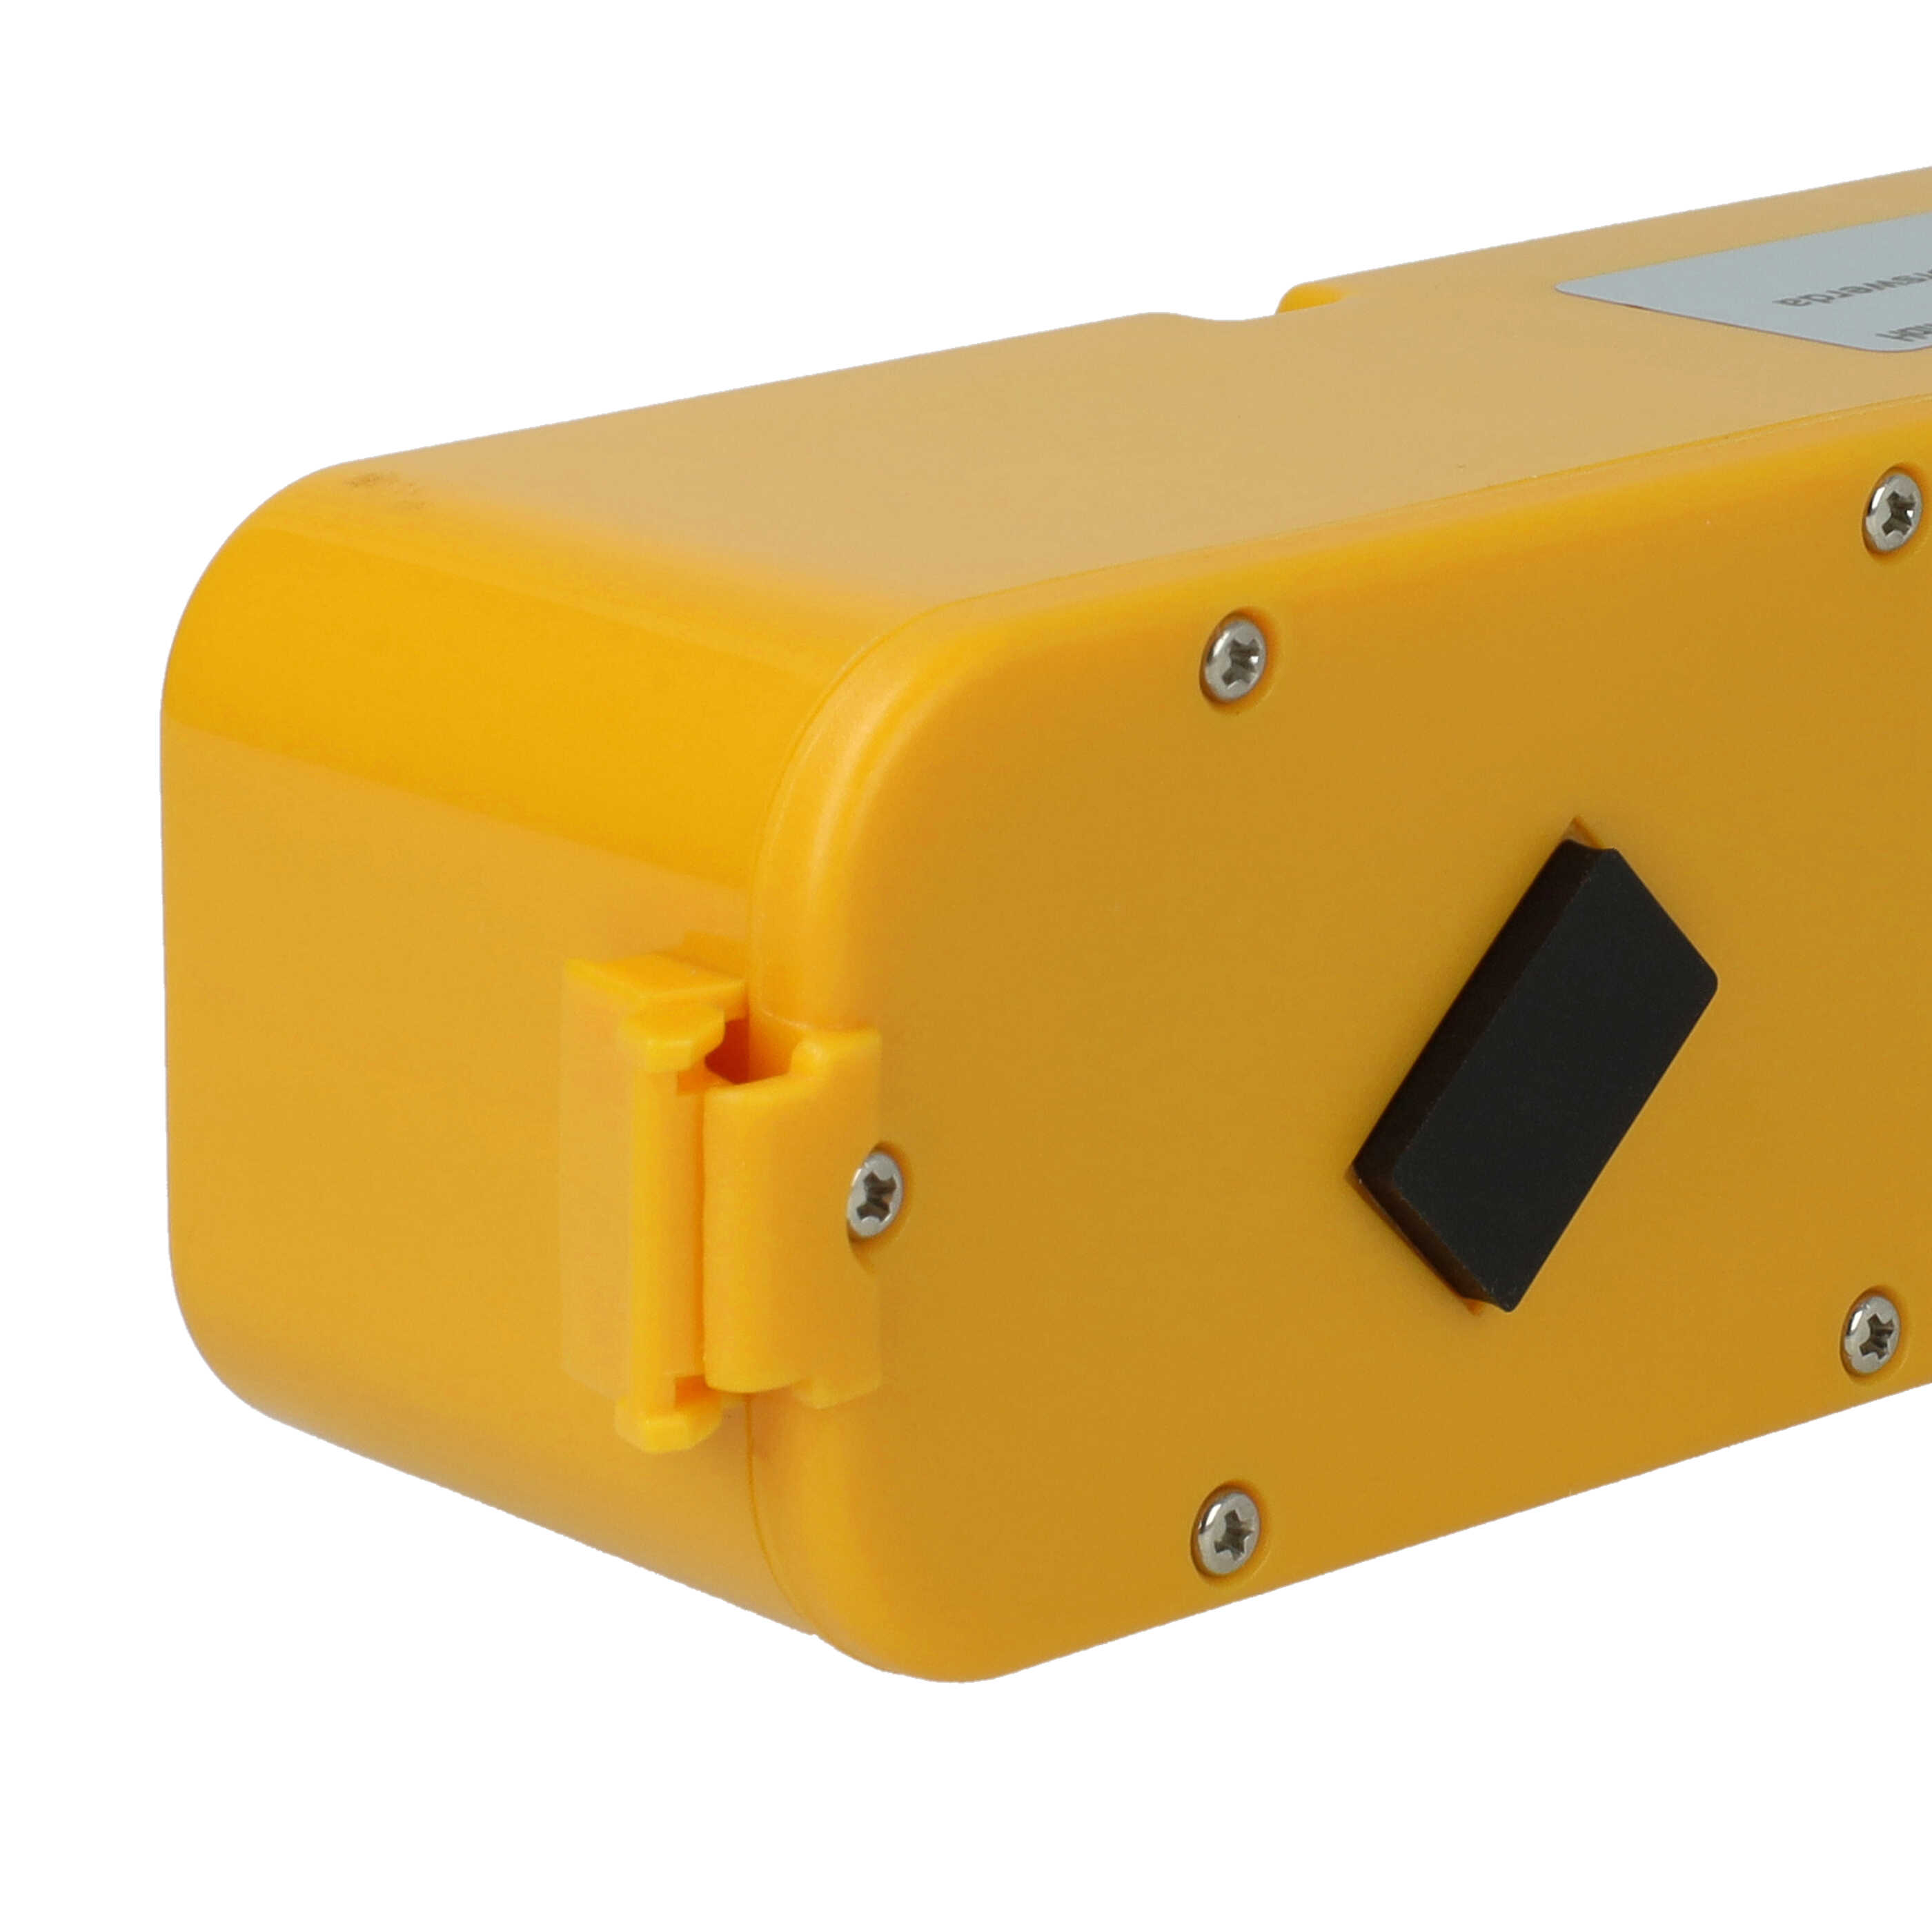 Batteria sostituisce APS 4905, 11700, 17373 per robot aspiratore iRobot - 3500mAh 14,4V NiMH giallo